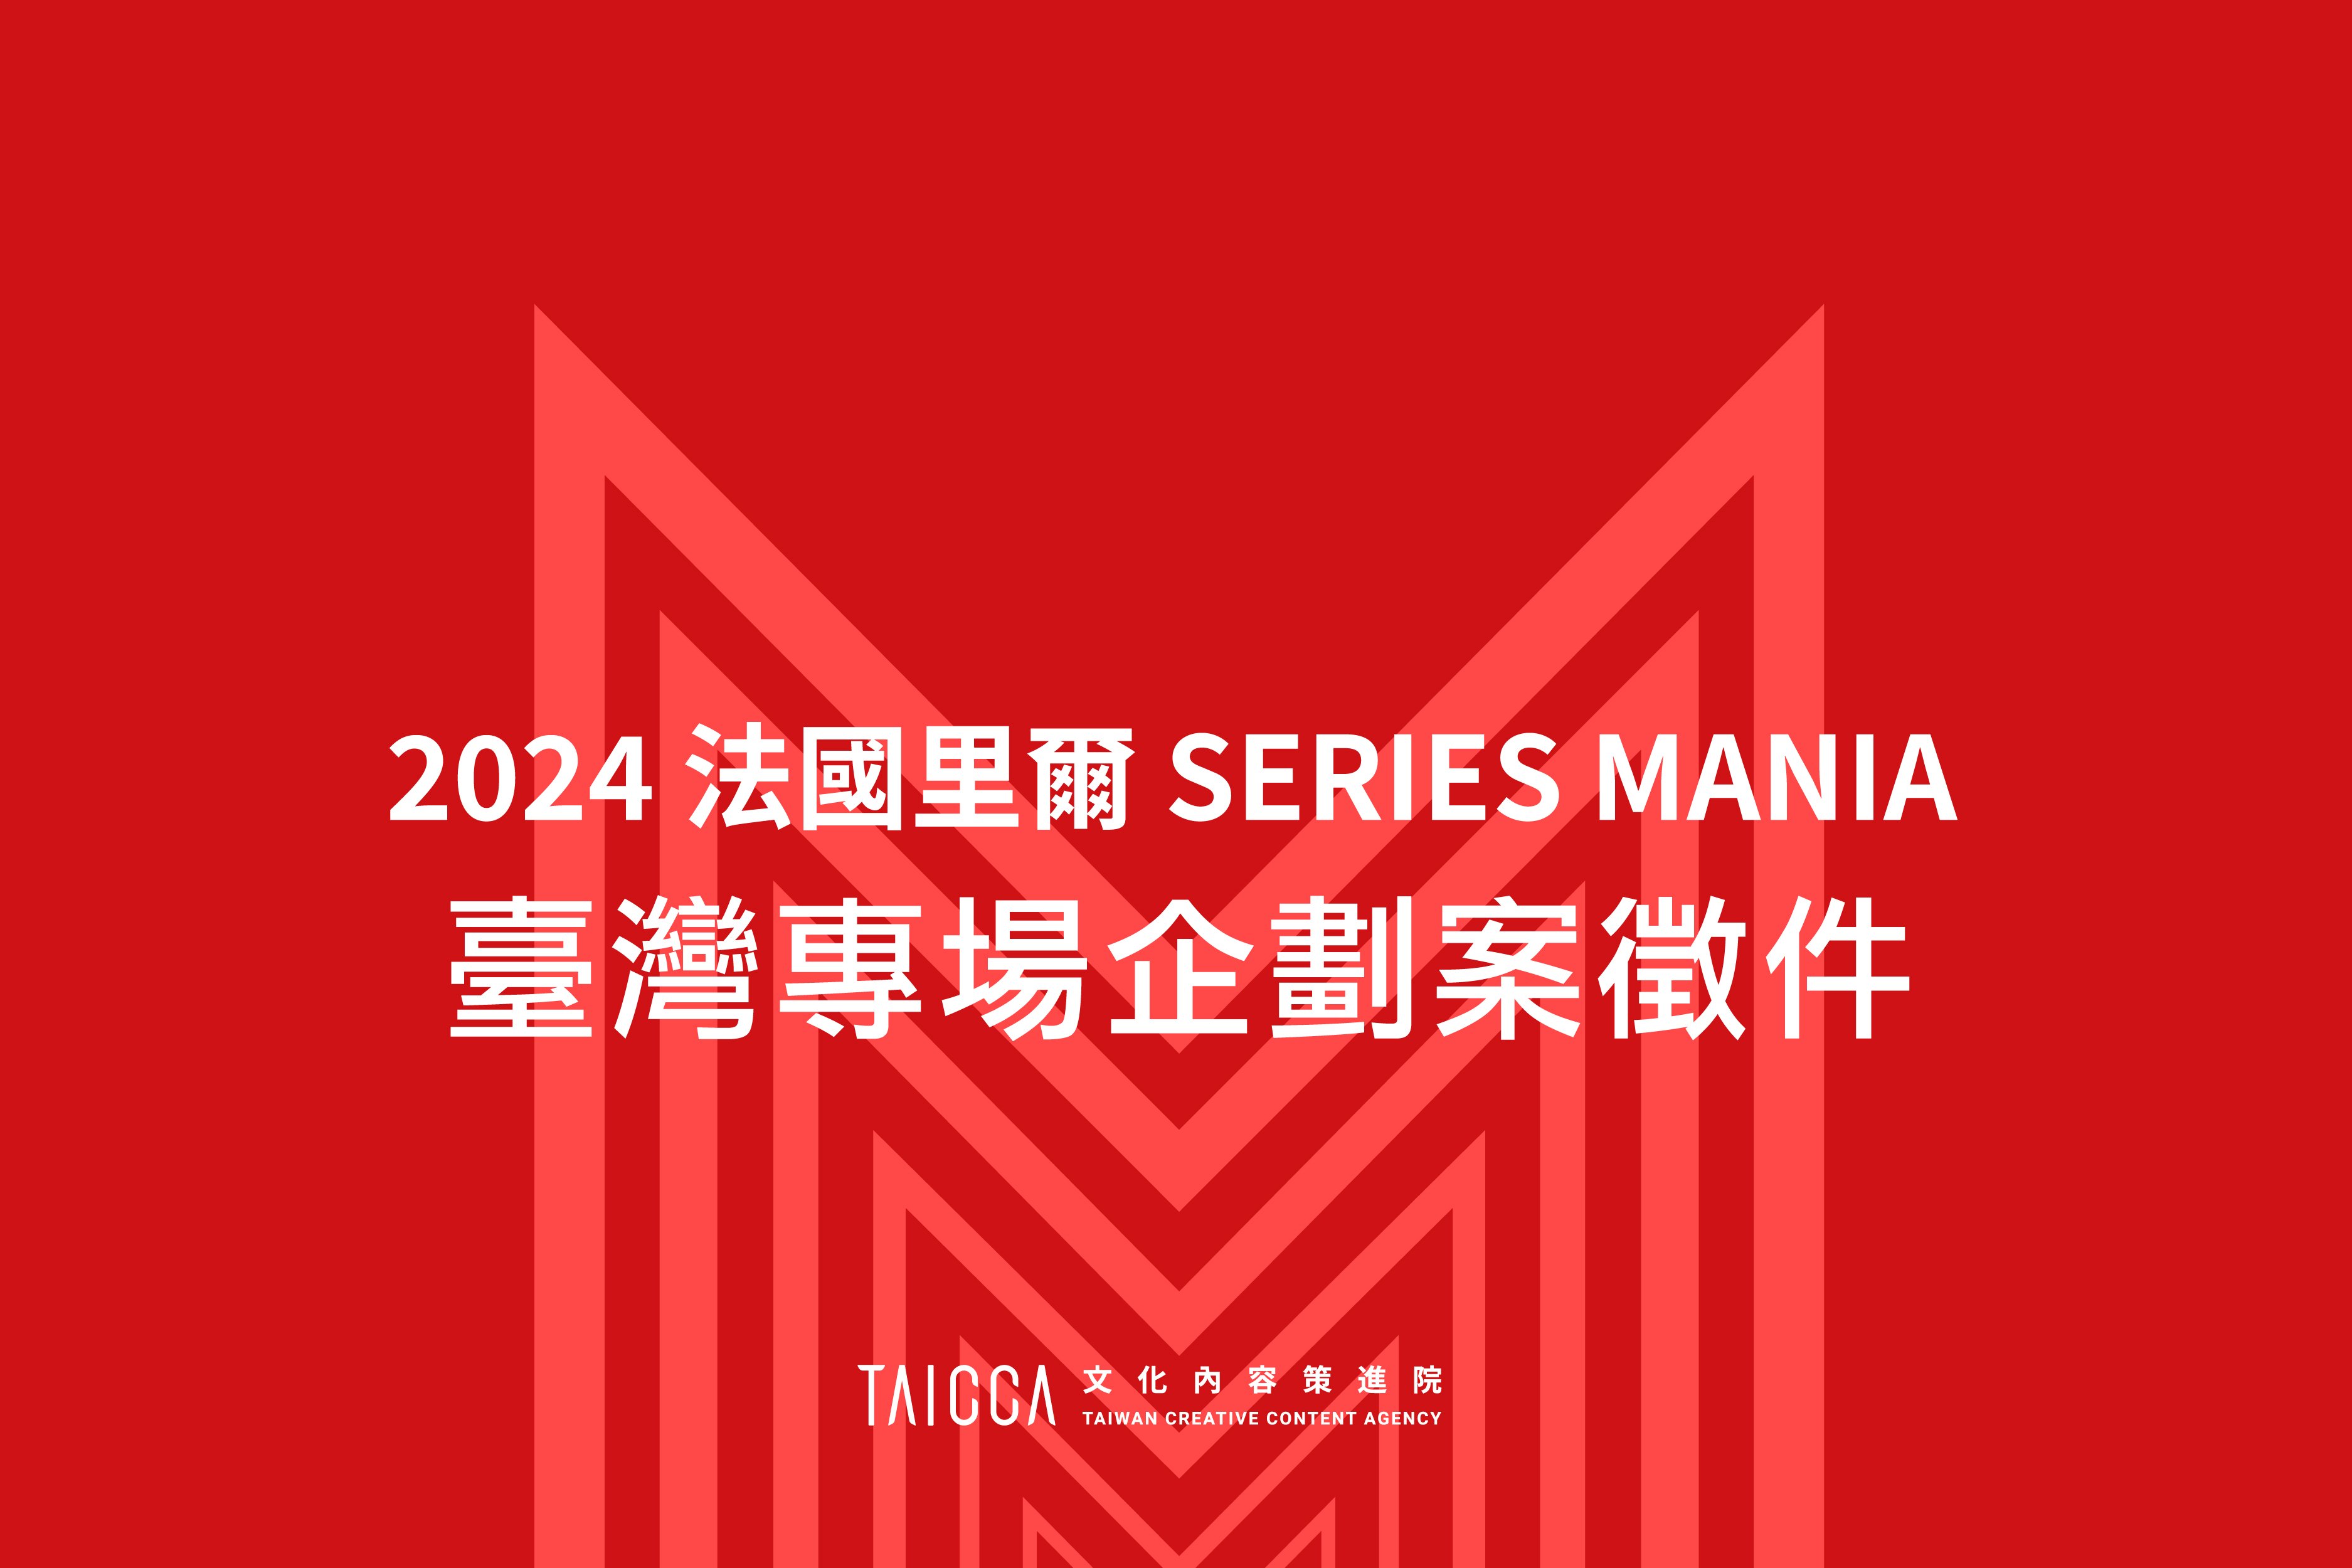 2024 法國里爾 SERIES MANIA  劇集展—臺灣專場企劃案徵件